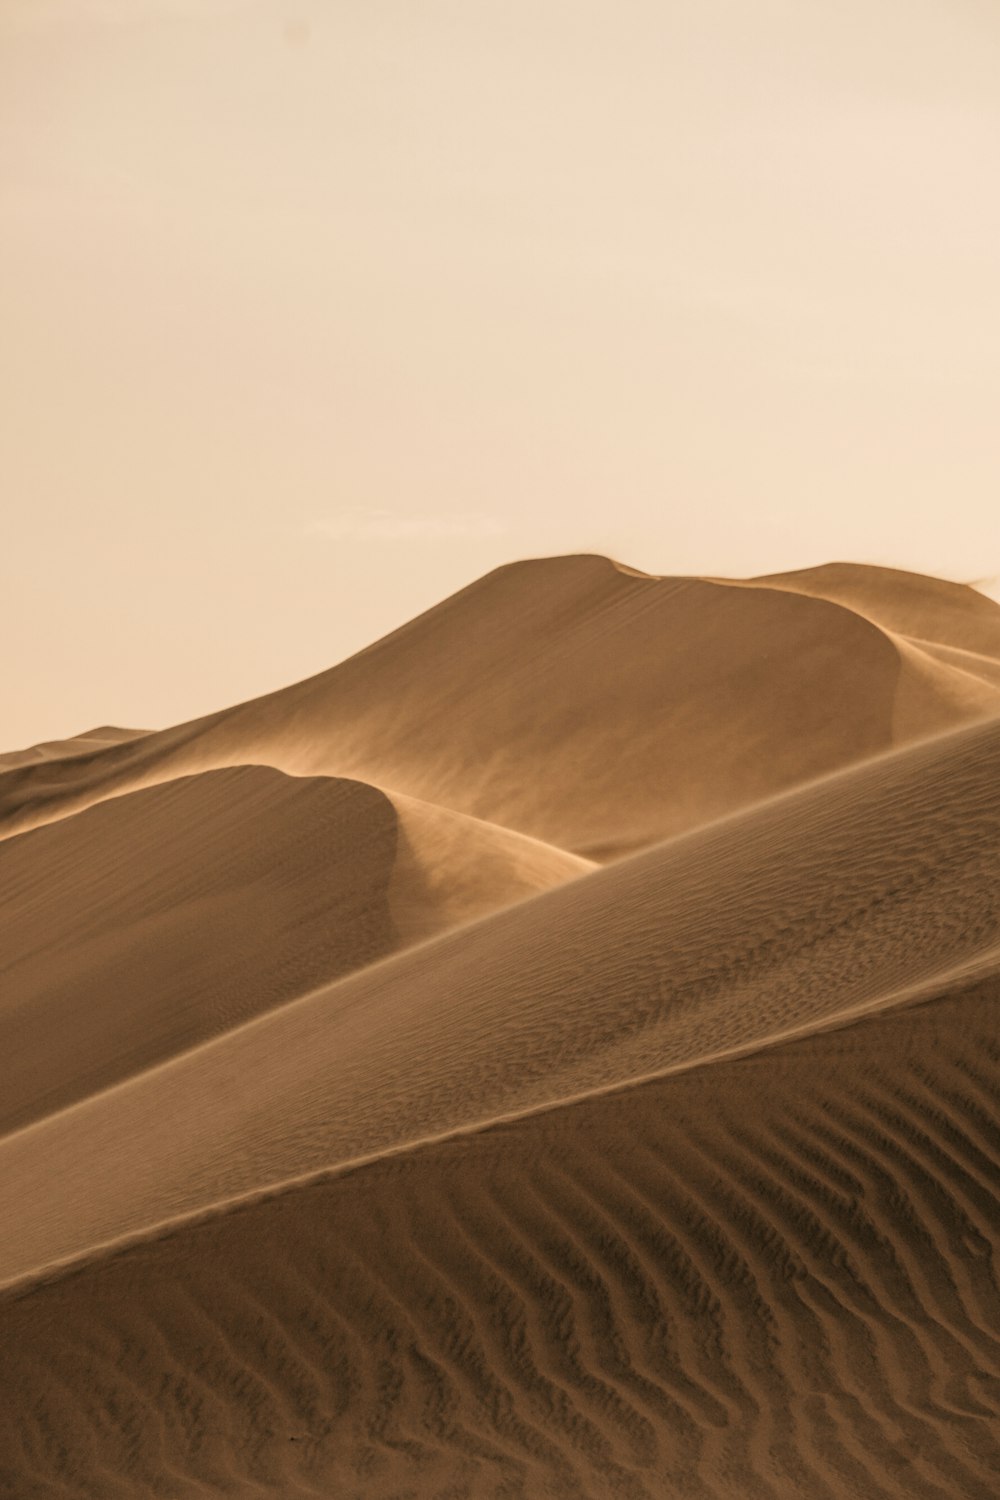 Dunes de sable brun sous un ciel blanc